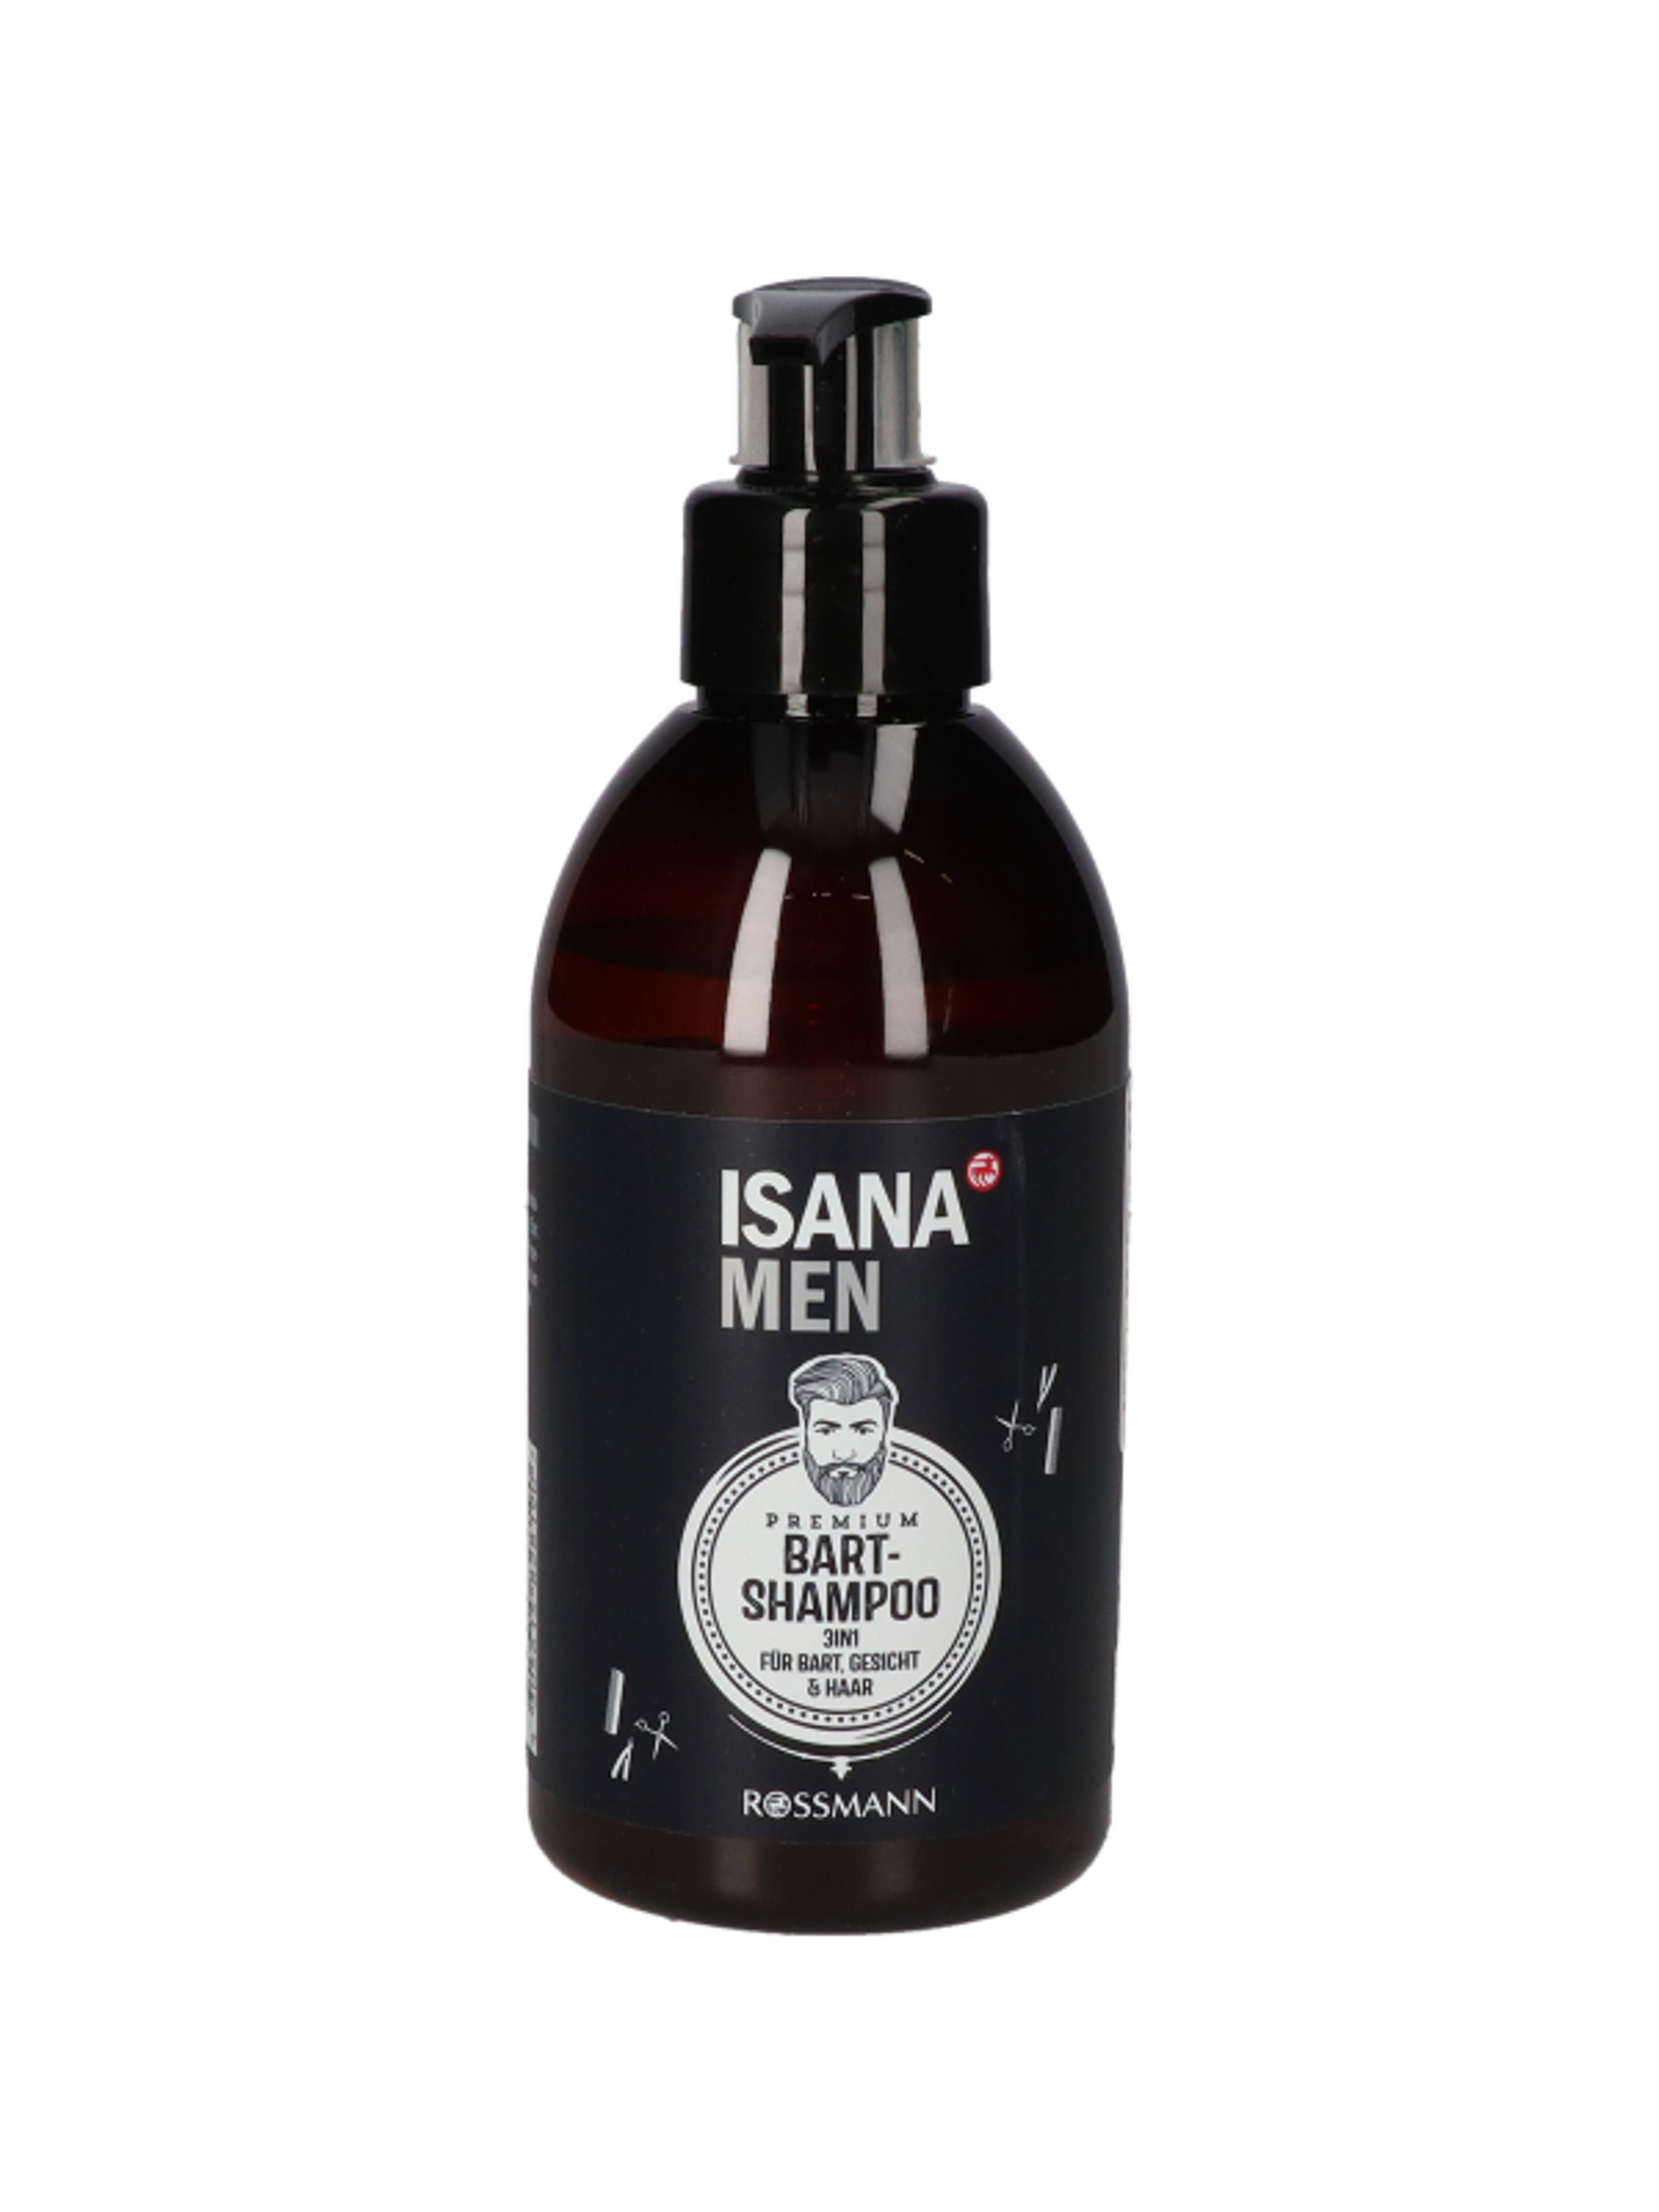 Isana Men Premium szakáll sampon, guarana & cink  - 250 ml-1